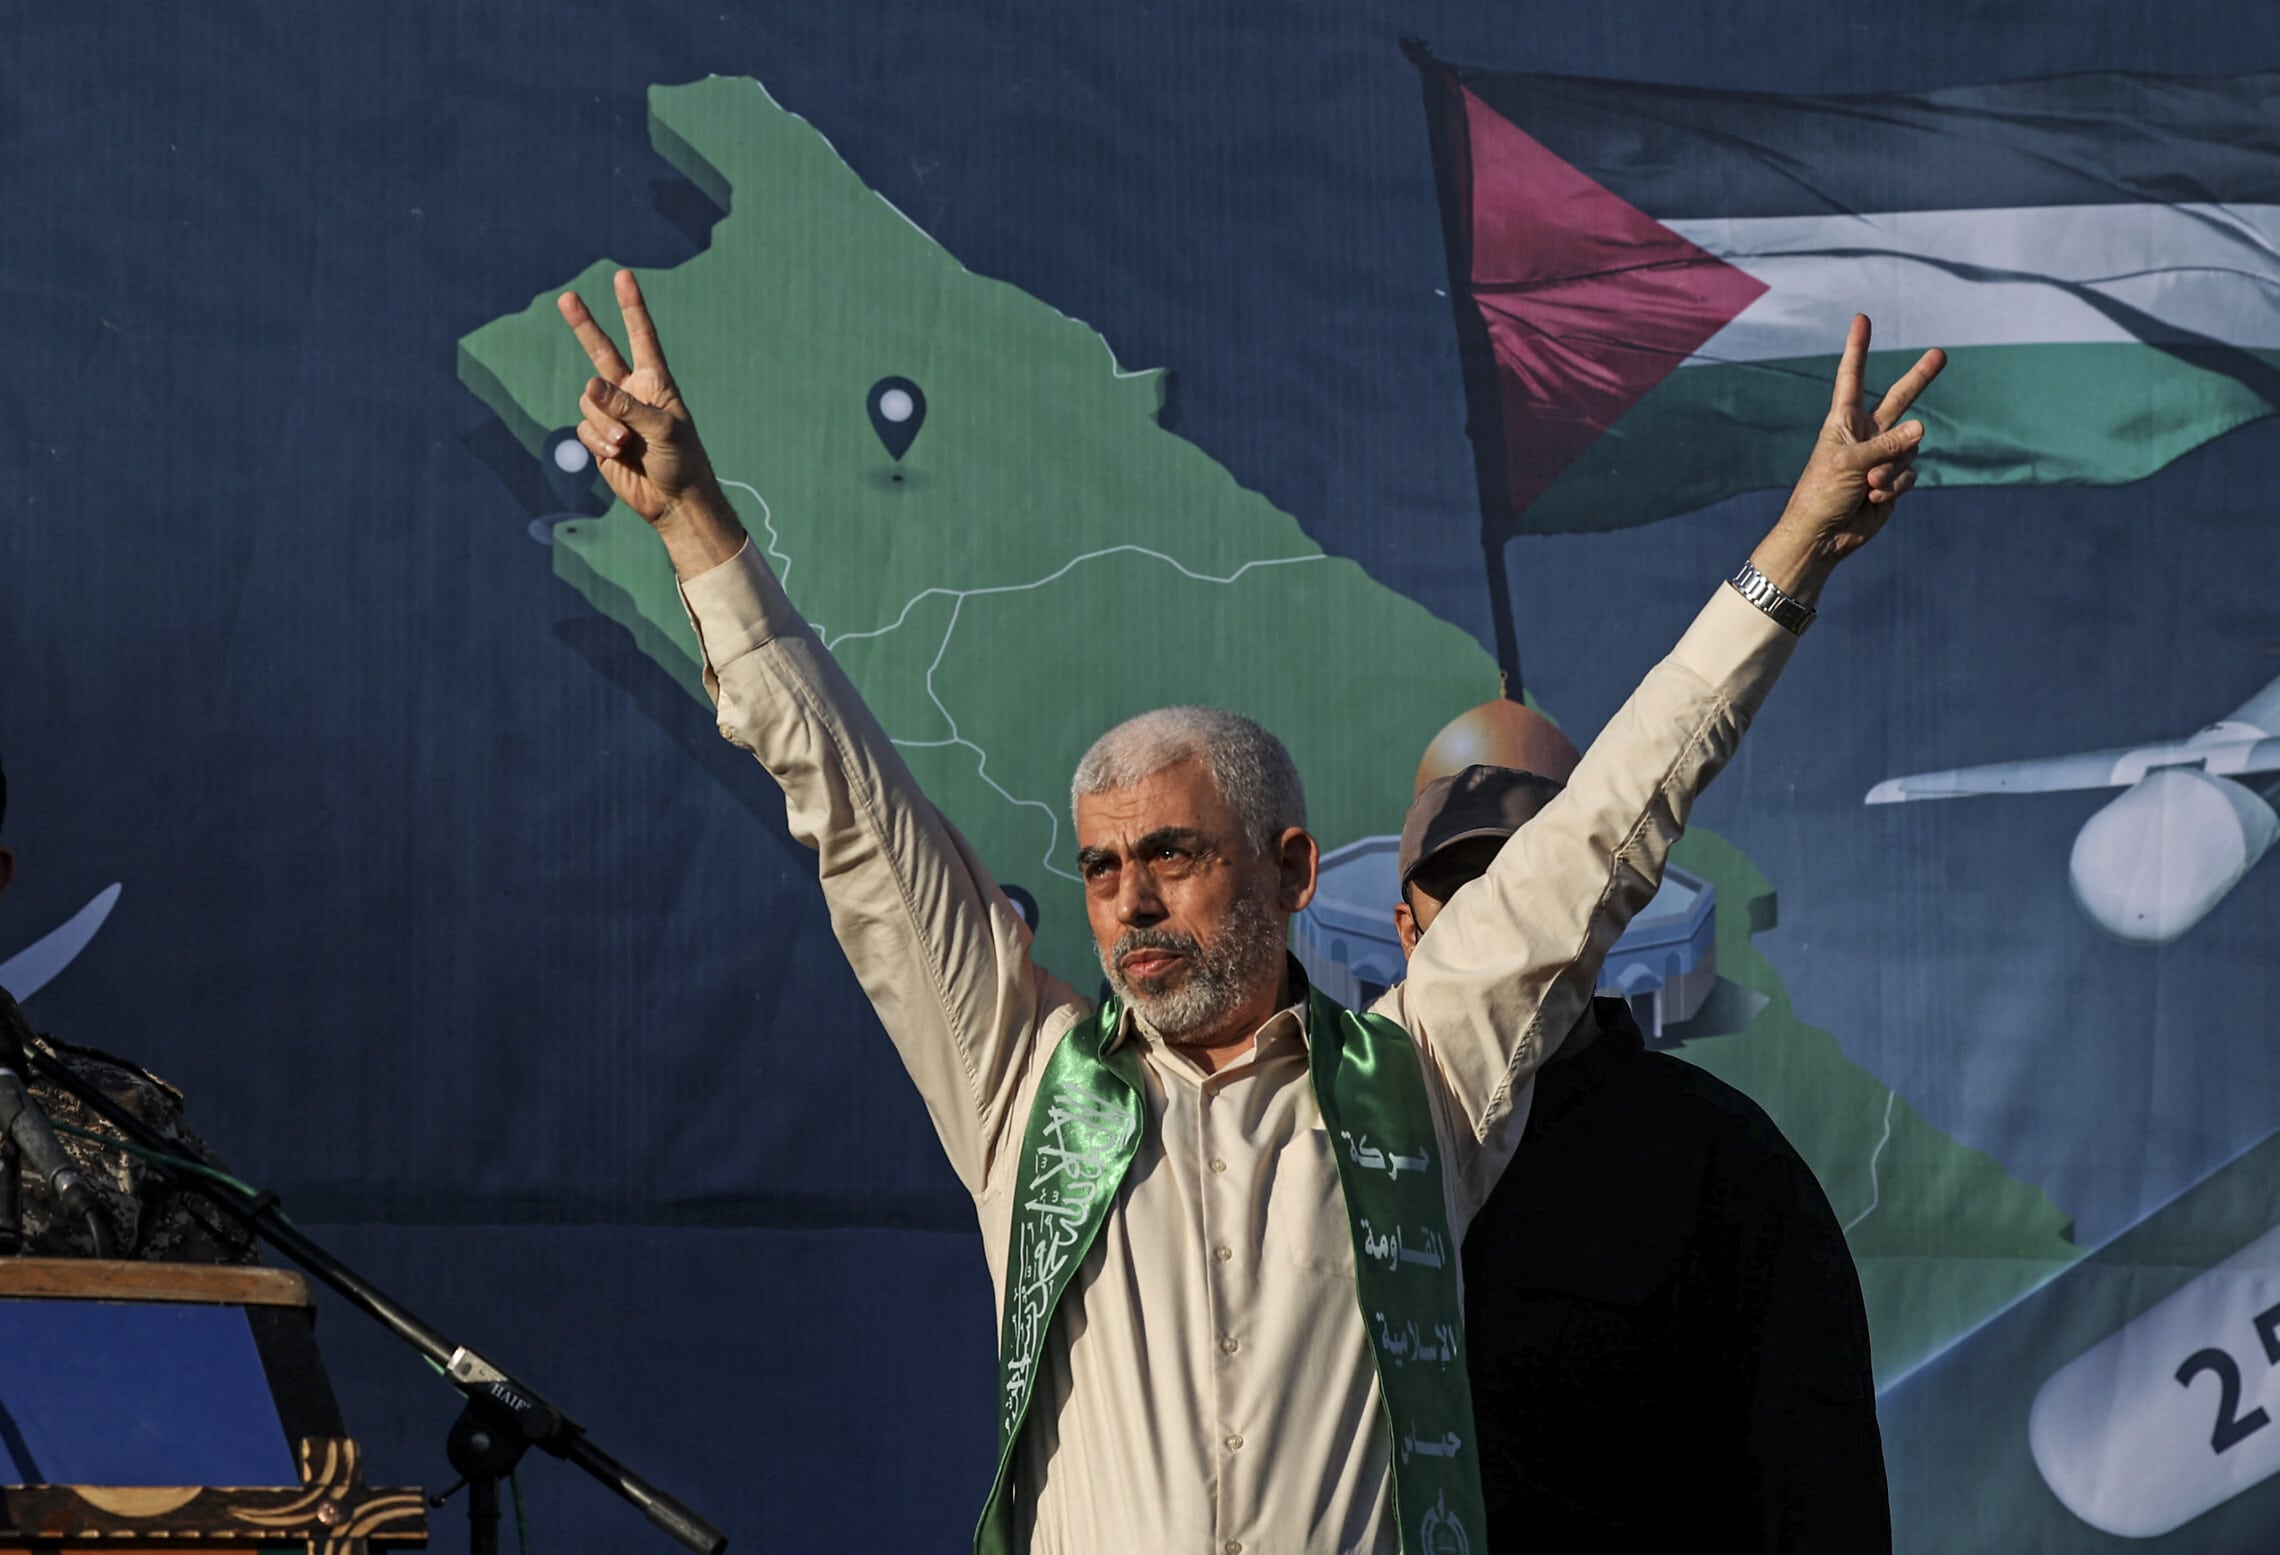 מנהיג חמאס בעזה יחיא סנוואר בעצרת בעיר עזה, 24 במאי 2021 (צילום: MAHMUD HAMS / AFP)